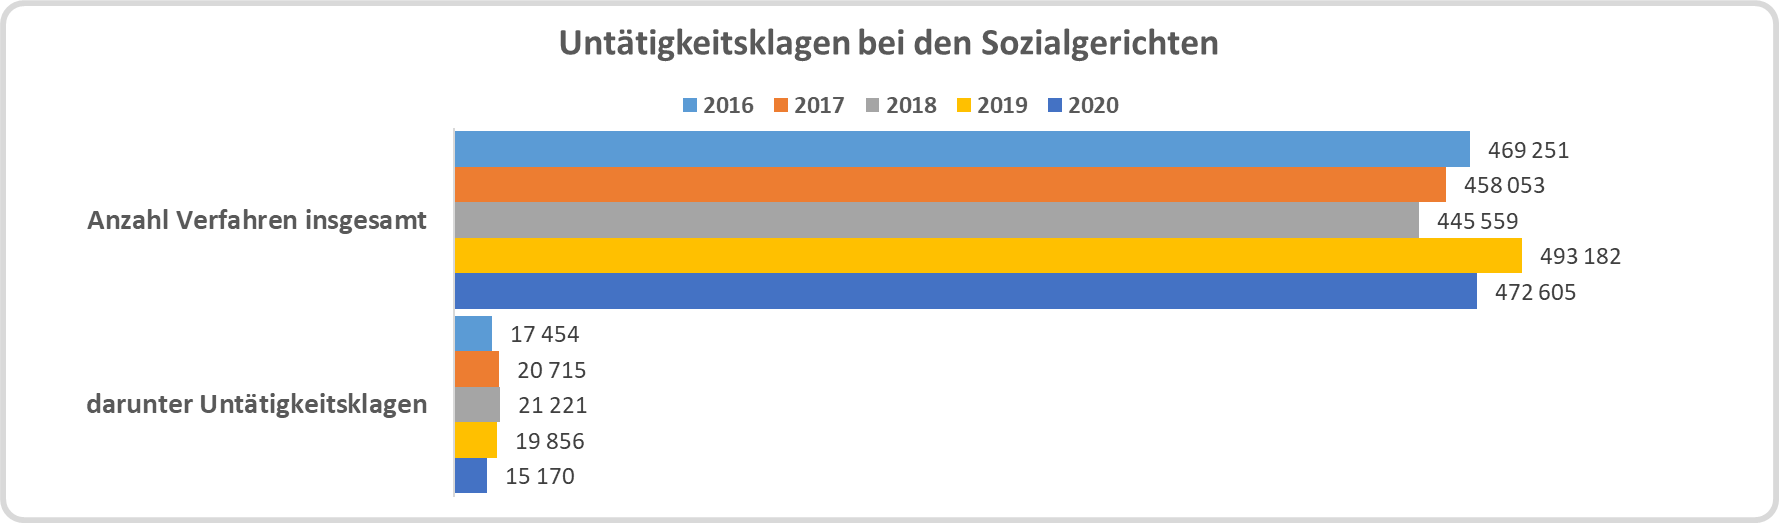 Balkendiagramm: Zahl der Untätigkeitsklagen bei deutschen Sozialgerichten von 2016 bis 2020